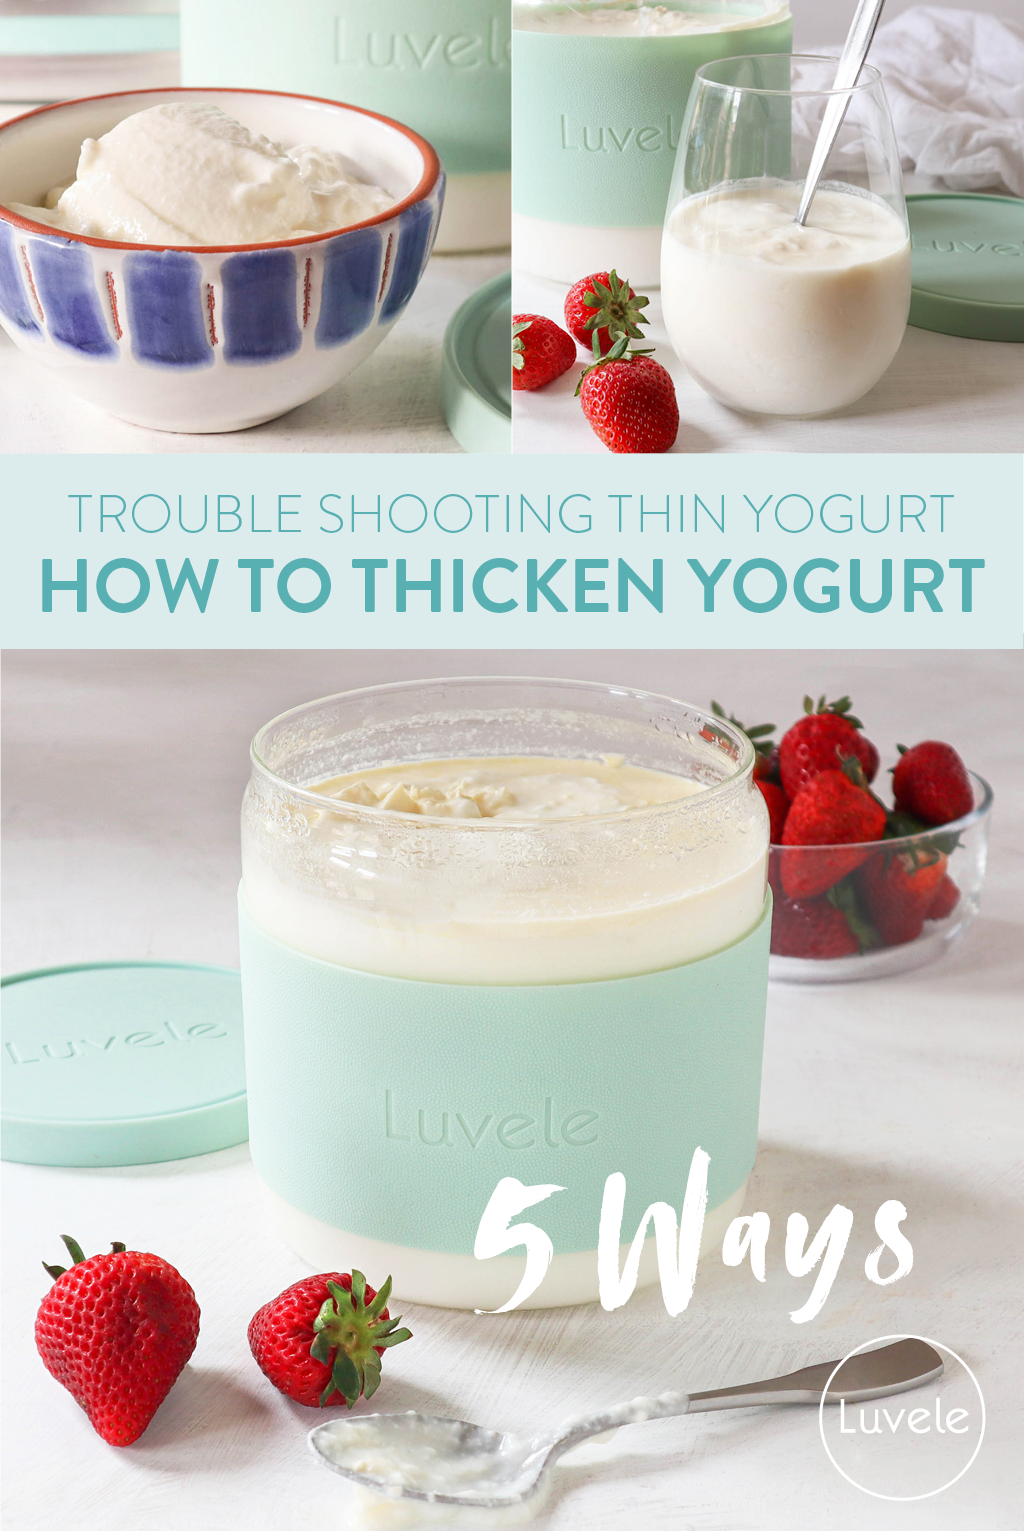 How to thicken yogurt